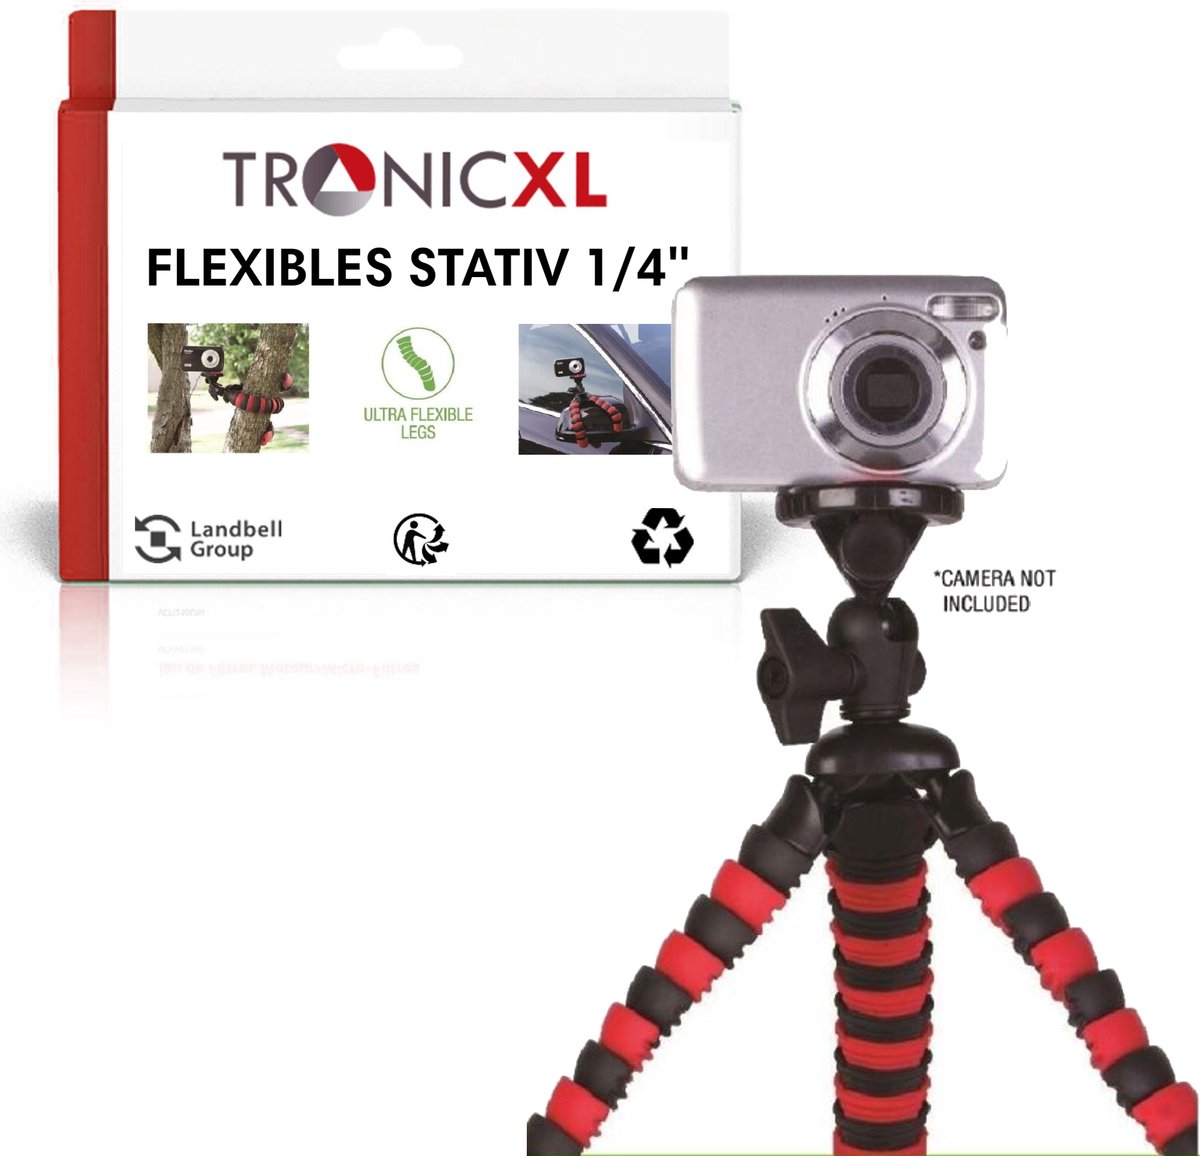 TronicXL Statief 1W mini statief Tripod voor webcam o.a geschikt voor Logitech C920 Brio 4K C925e C922x C922 C930e C930 C615 camera